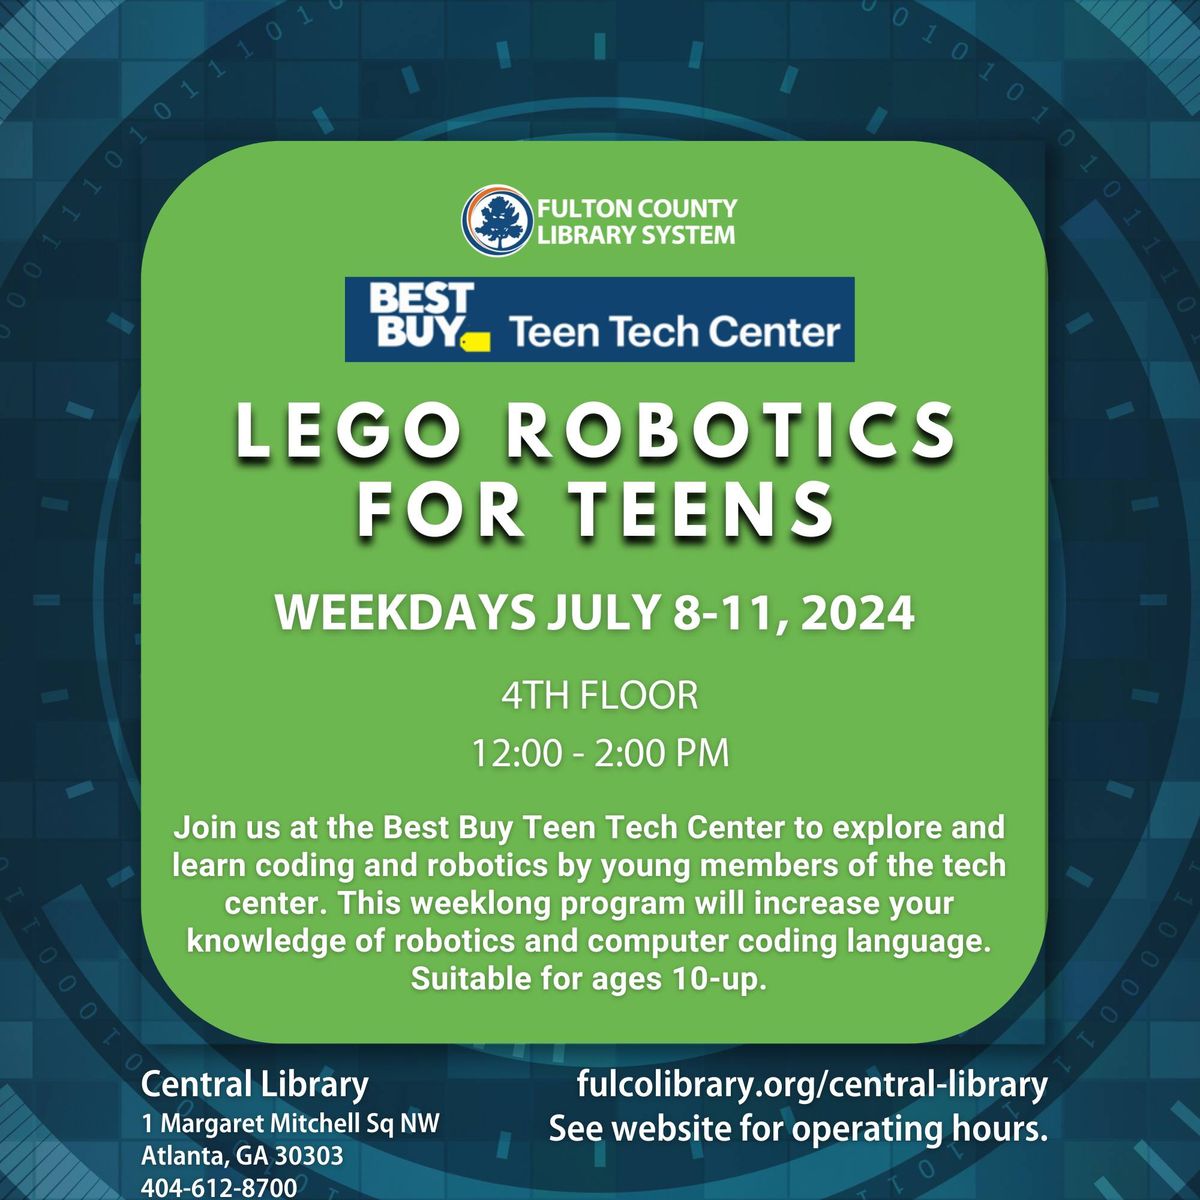 Lego Robotics at the Best Buy Teen Tech Center